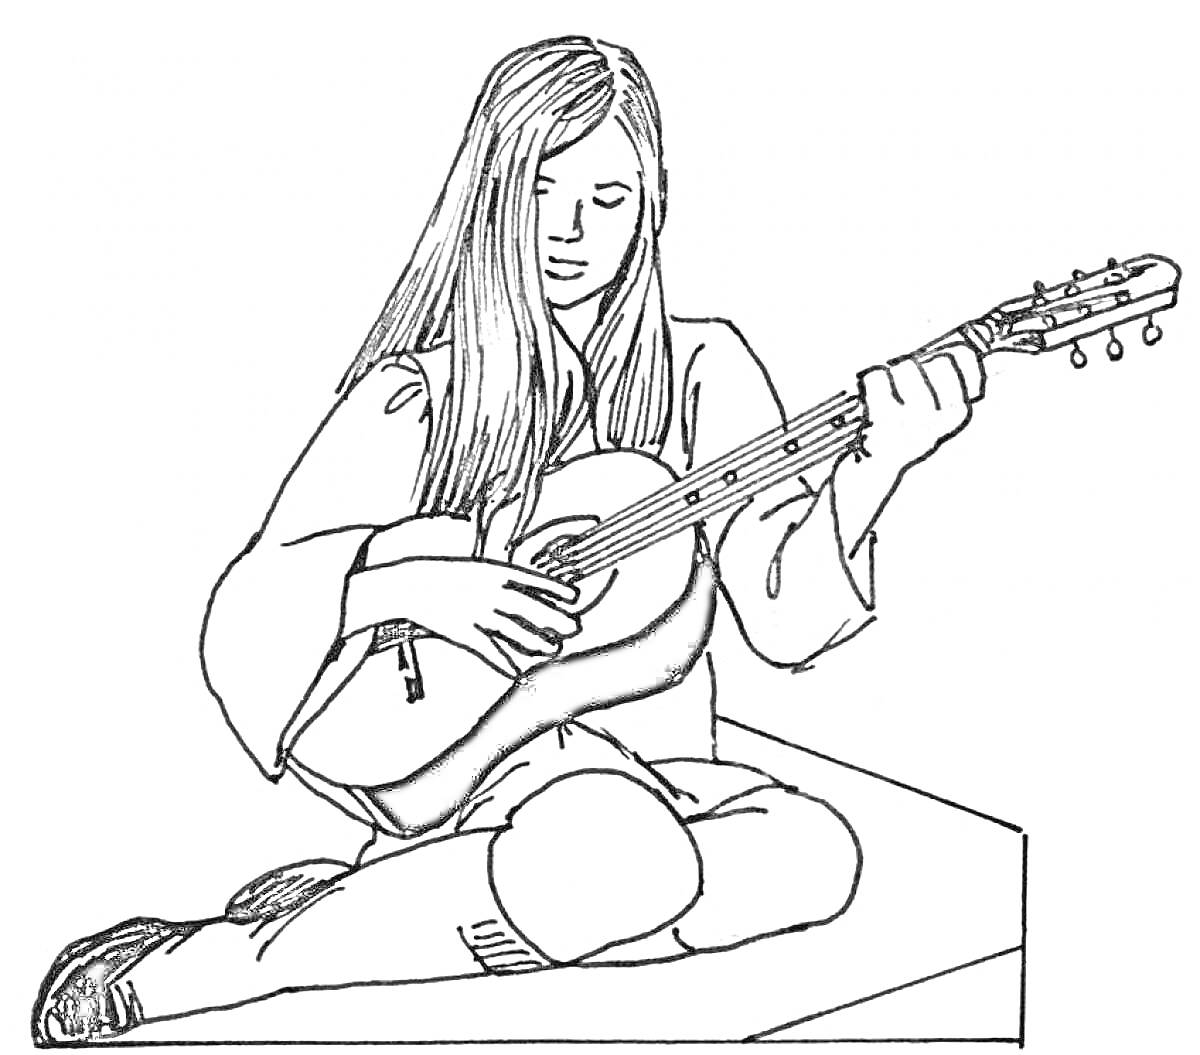 Девушка с длинными волосами, сидящая на полу и играющая на гитаре